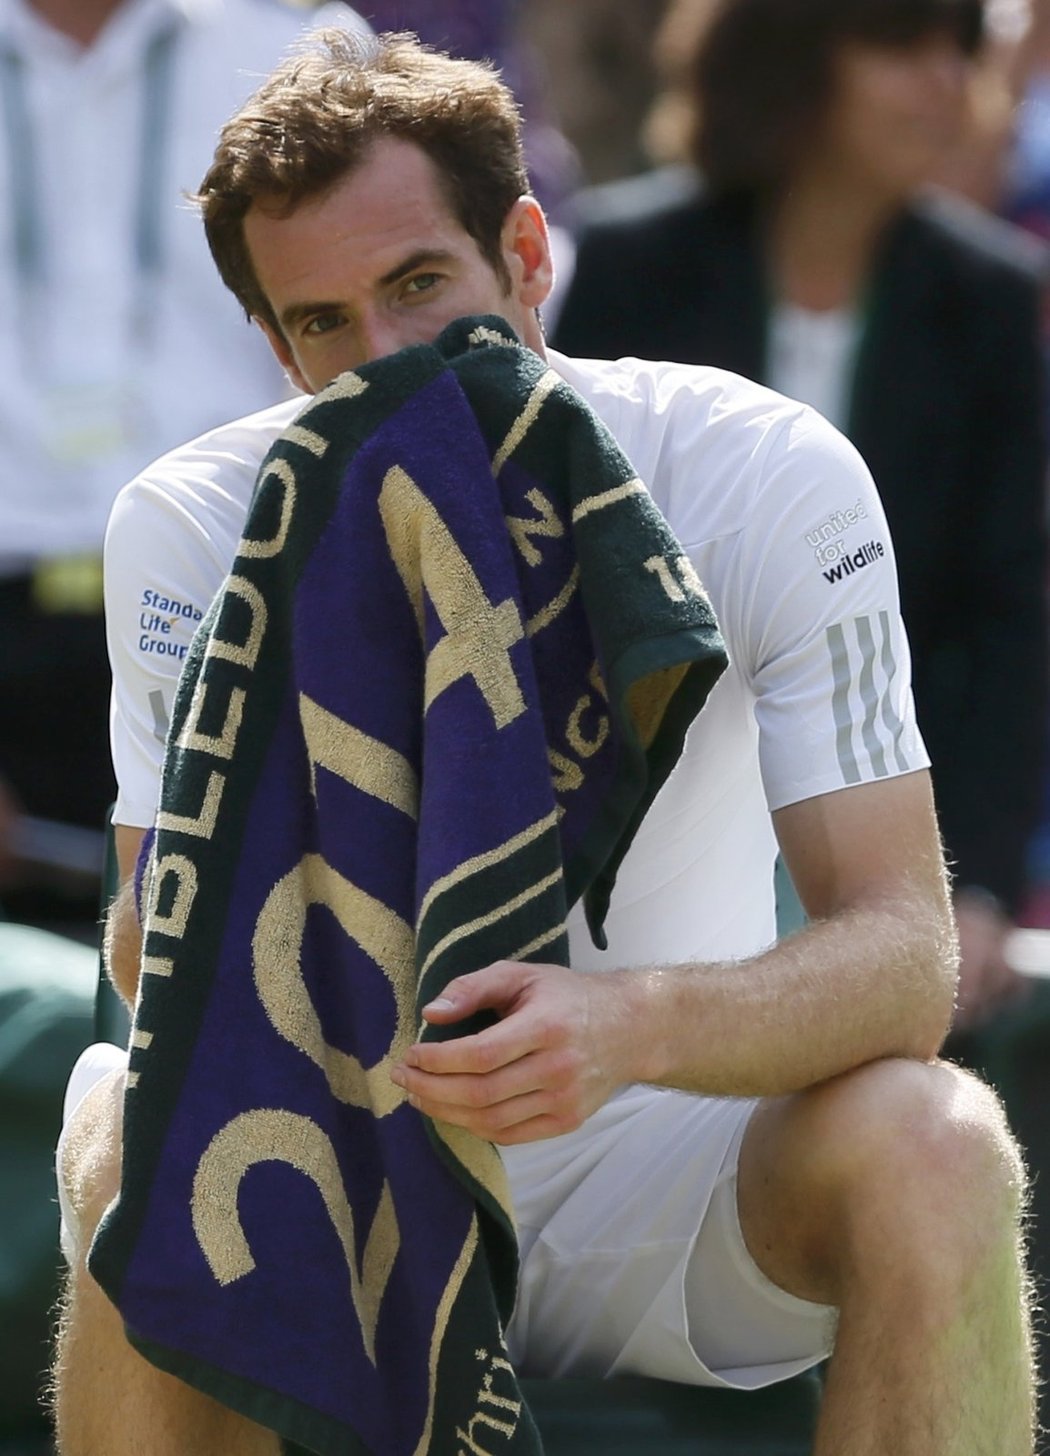 Britský tenista Andy Murray loňské vítězství ve Wimbledonu neobhájí. Třetí nasazený hráč dnes ve čtvrtfinále podlehl Bulharovi Grigoru Dimitrovovi 1:6, 6:7 a 2:6. Dimitrov se probojoval do semifinále grandslamového turnaje poprvé v kariéře.